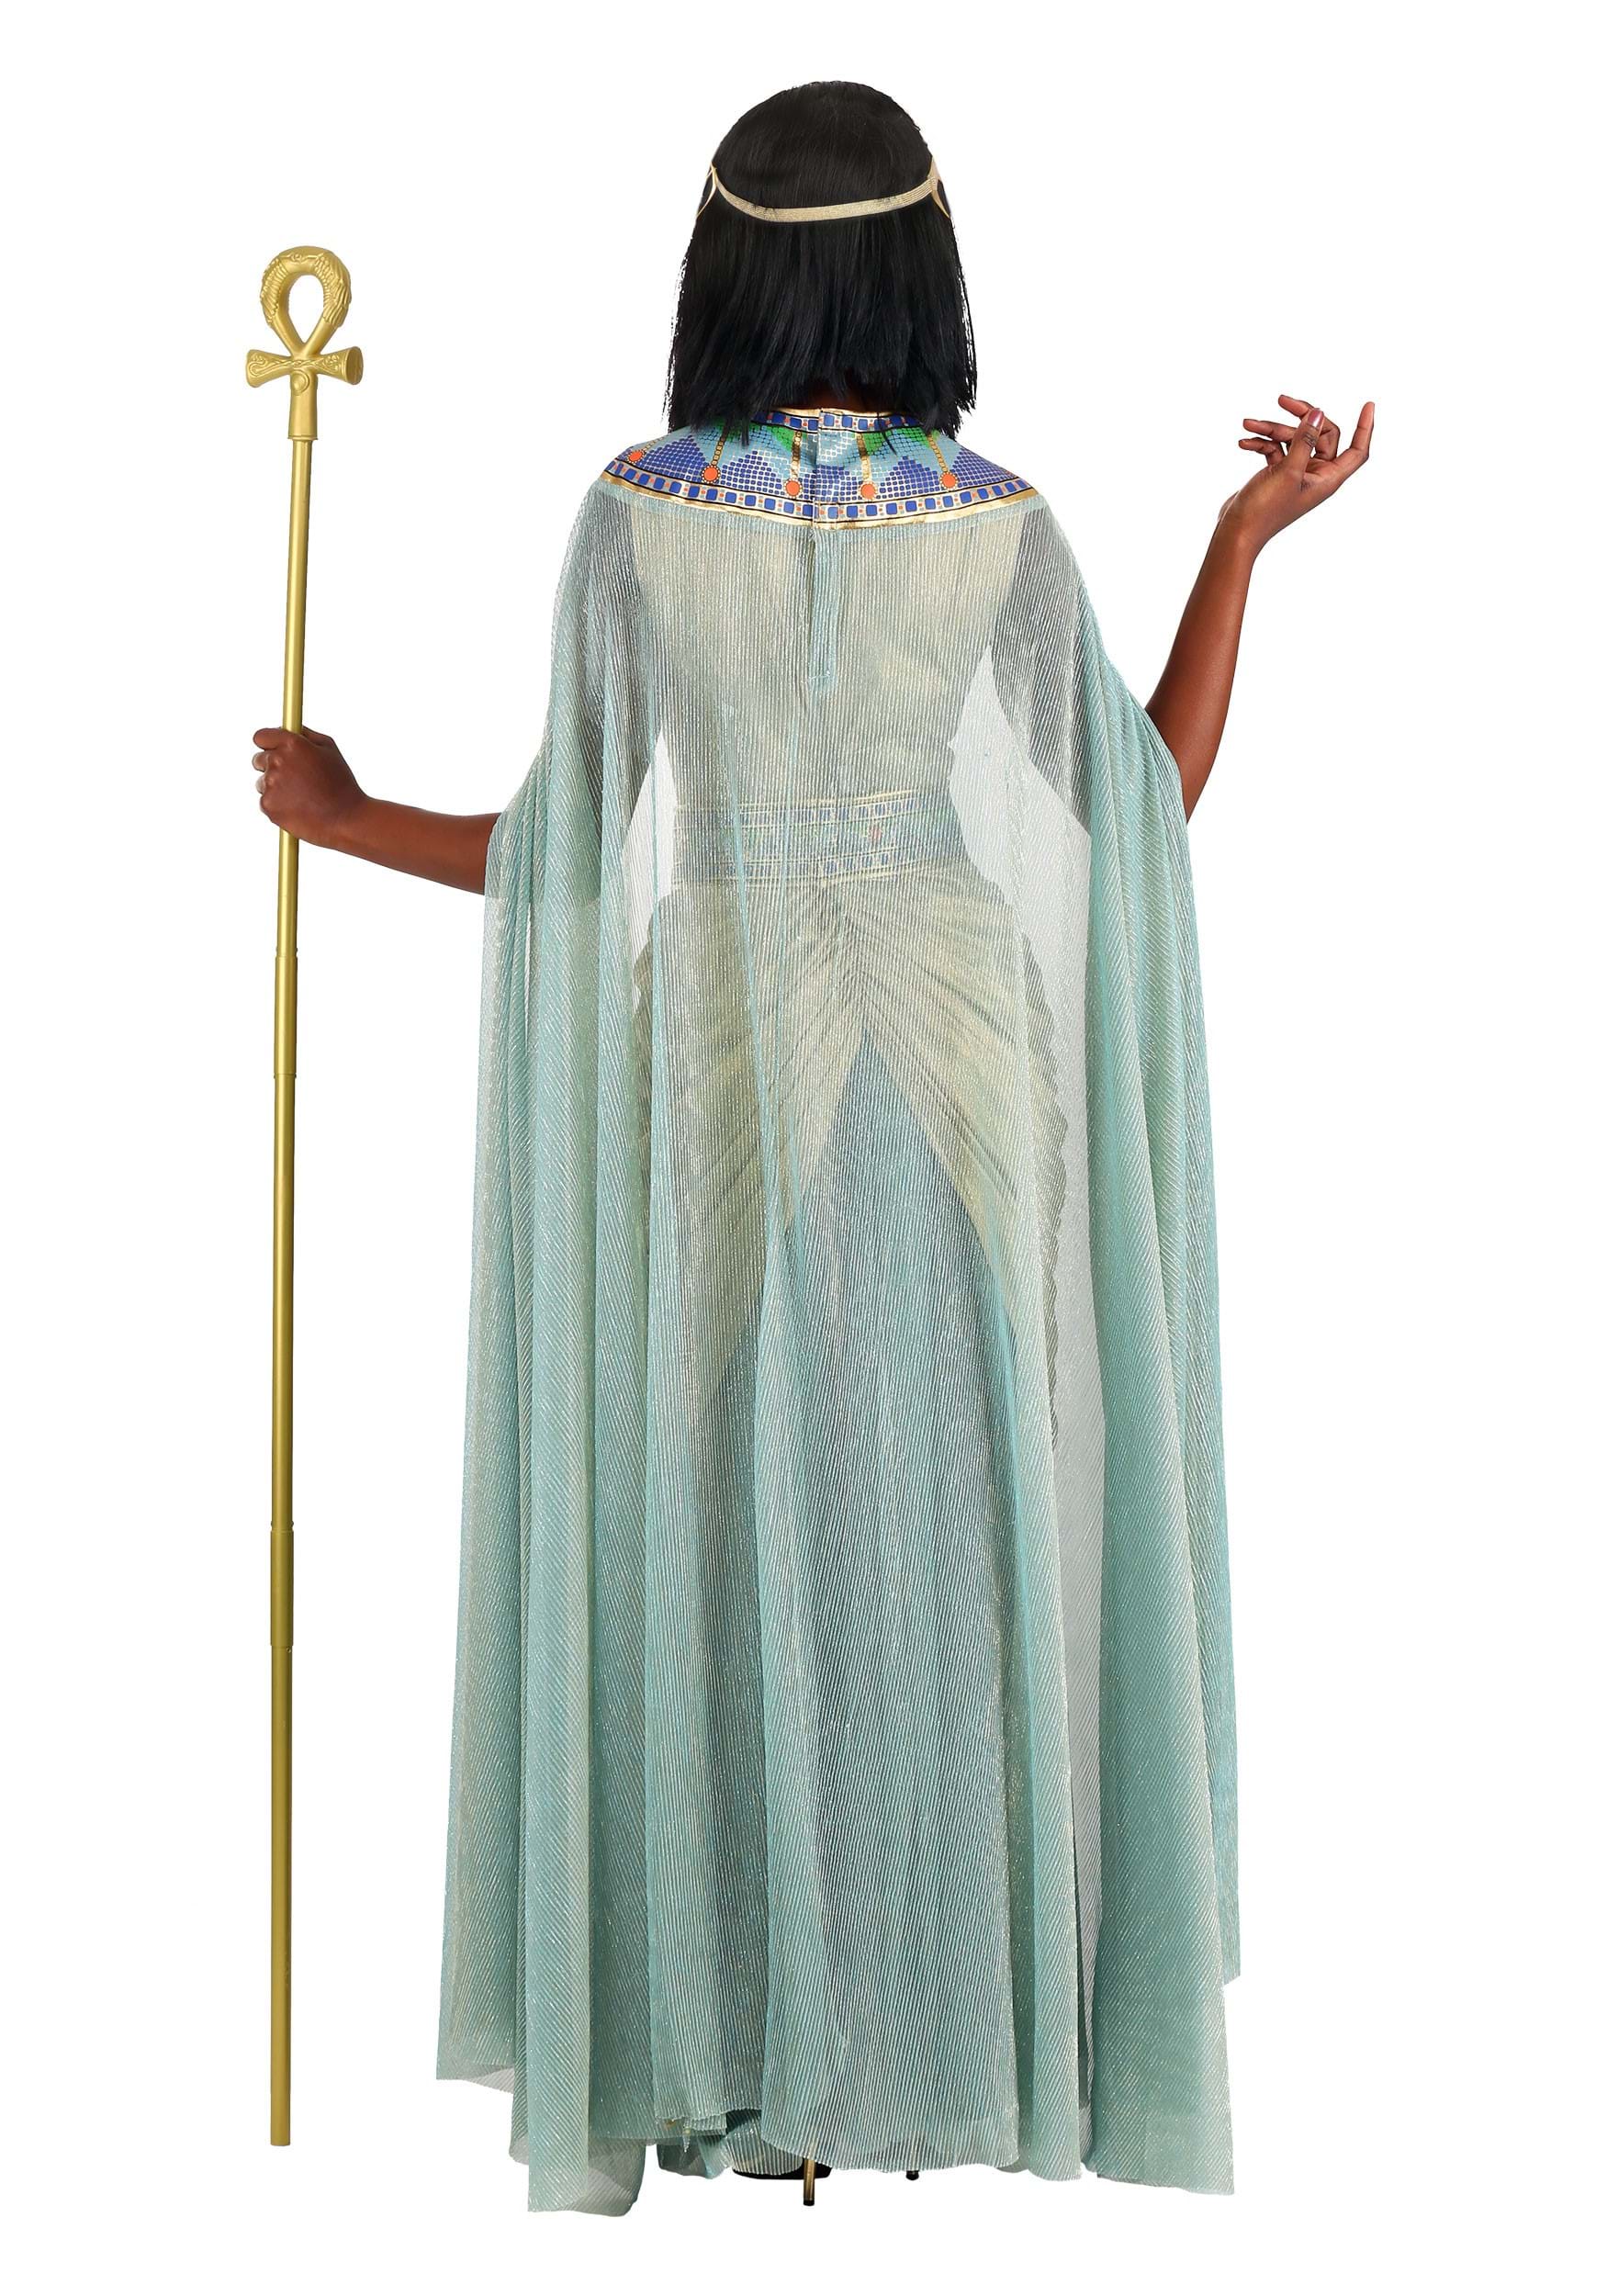 Queen Cleopatra Women's Fancy Dress Costume